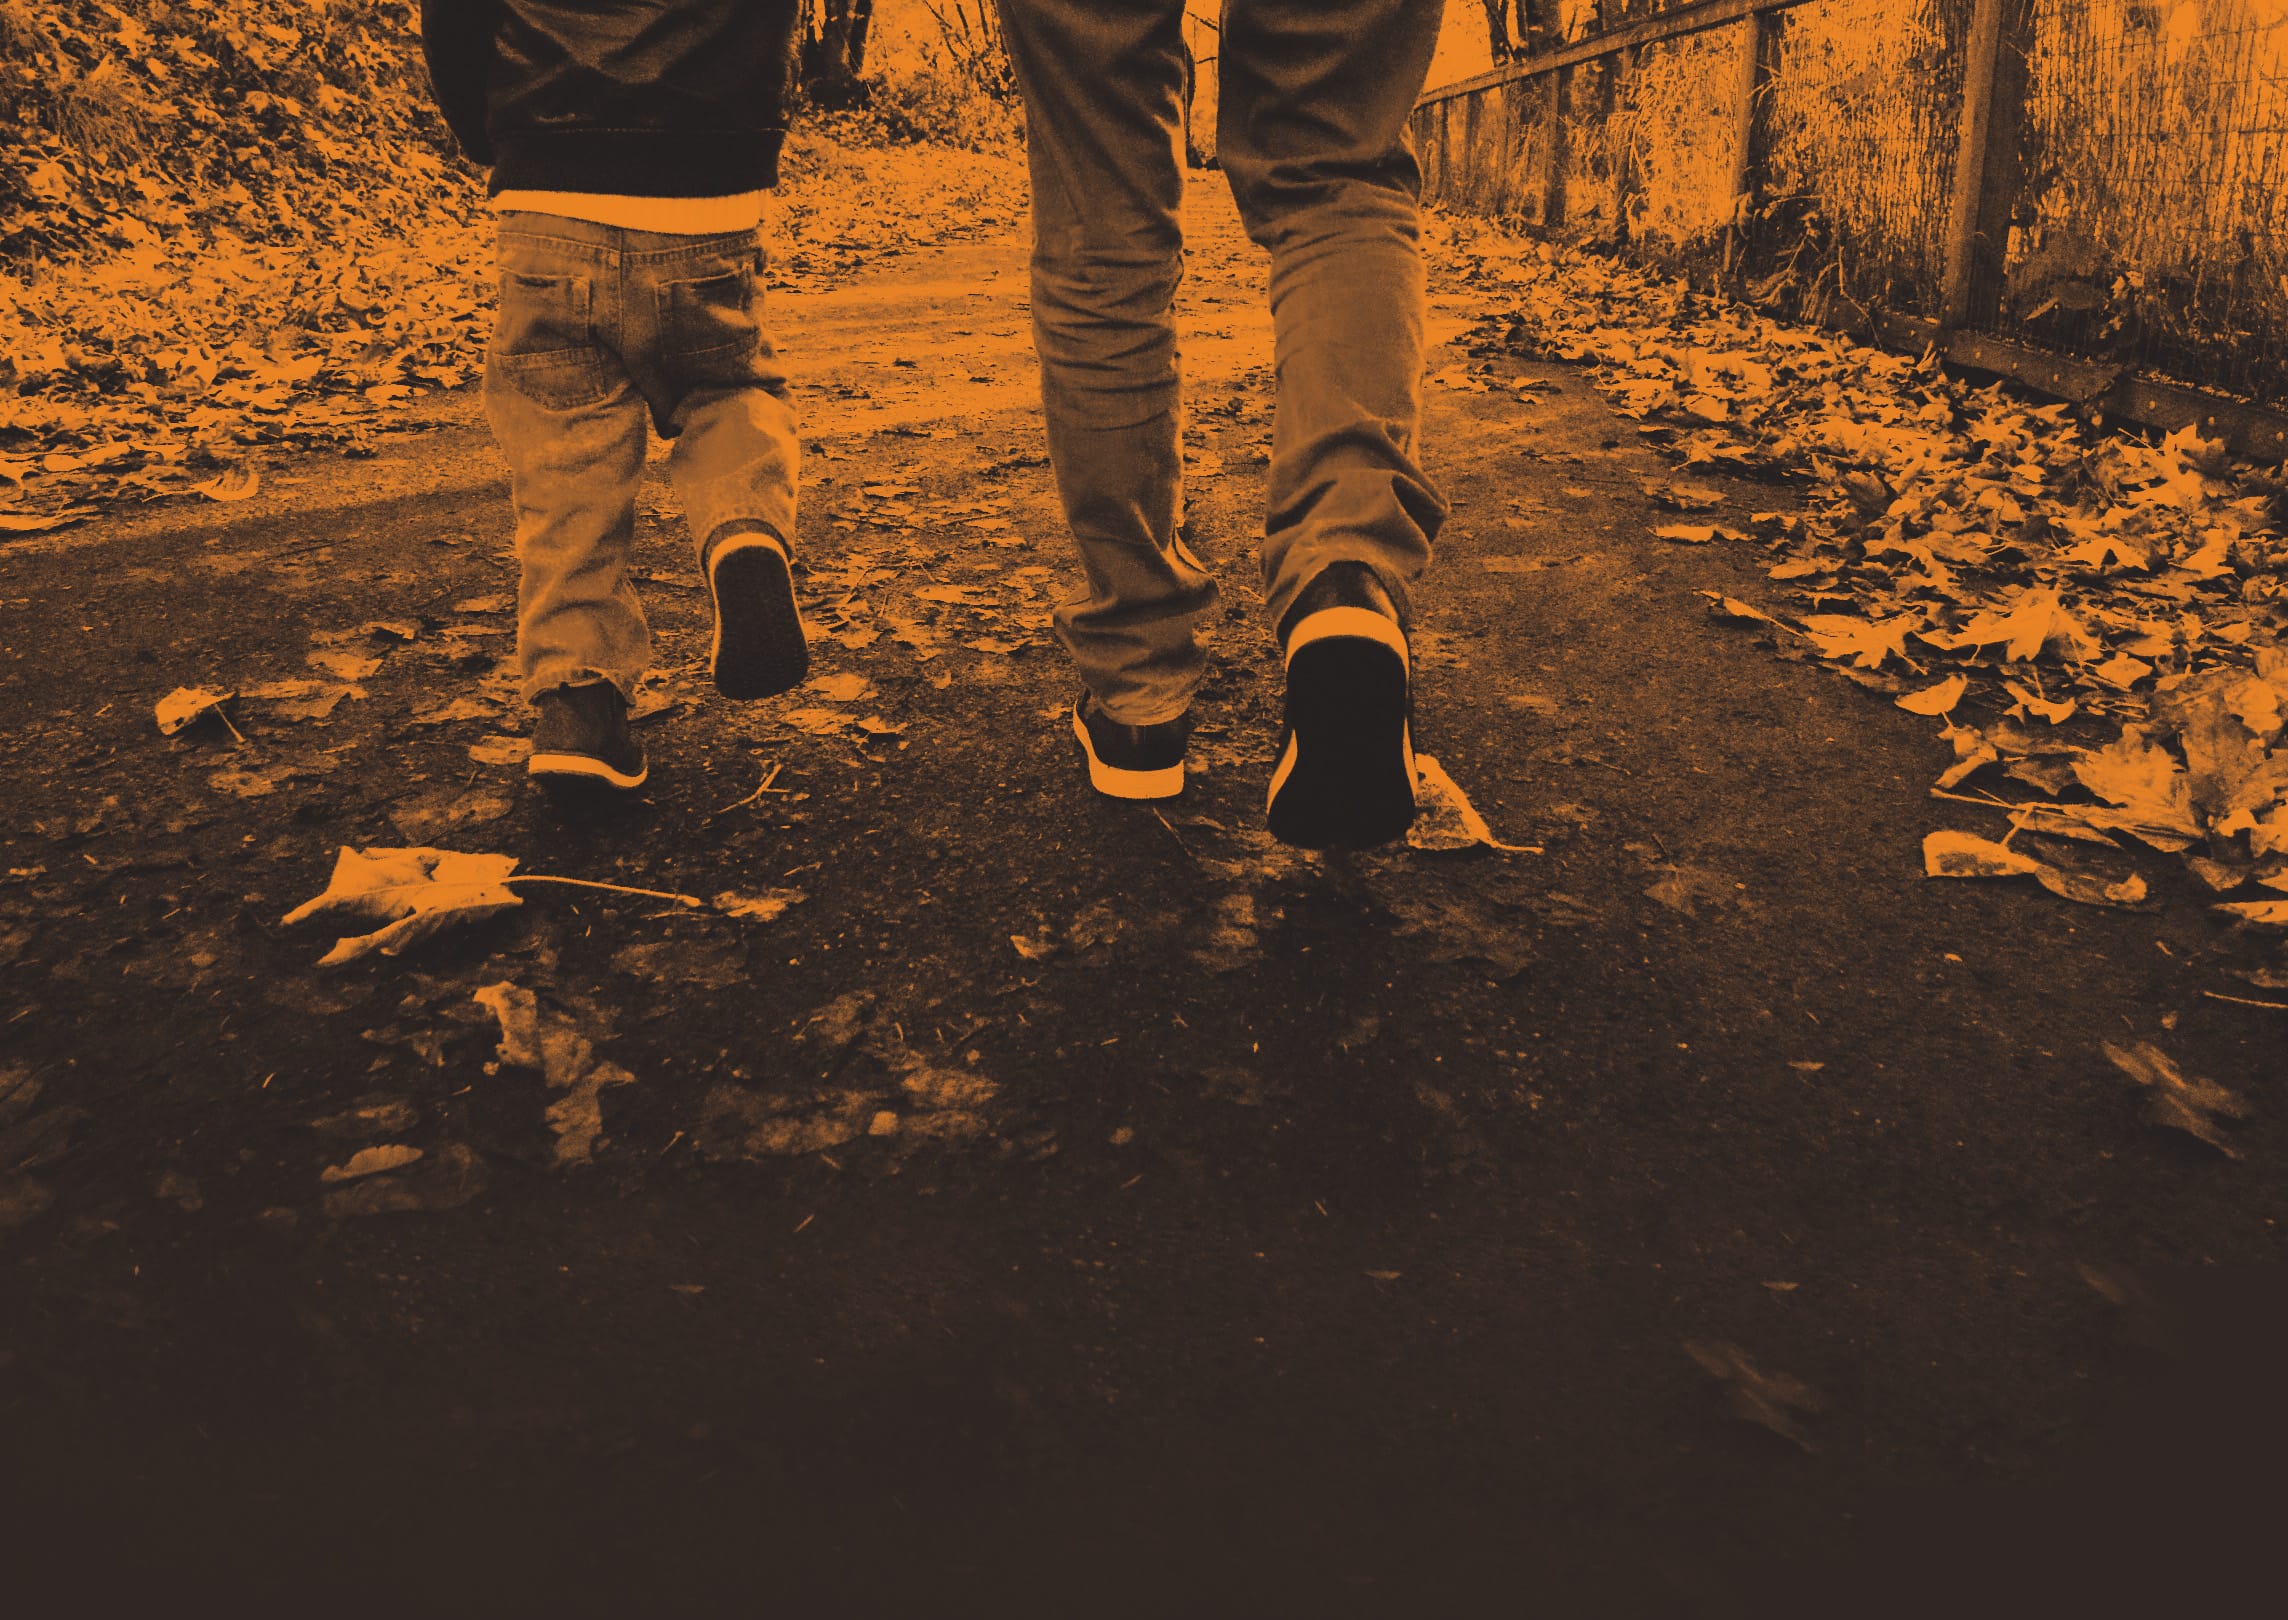 The feet of a father and son walking together in nature. Les pieds d'un père et d’un fils marchant ensemble dans la nature.